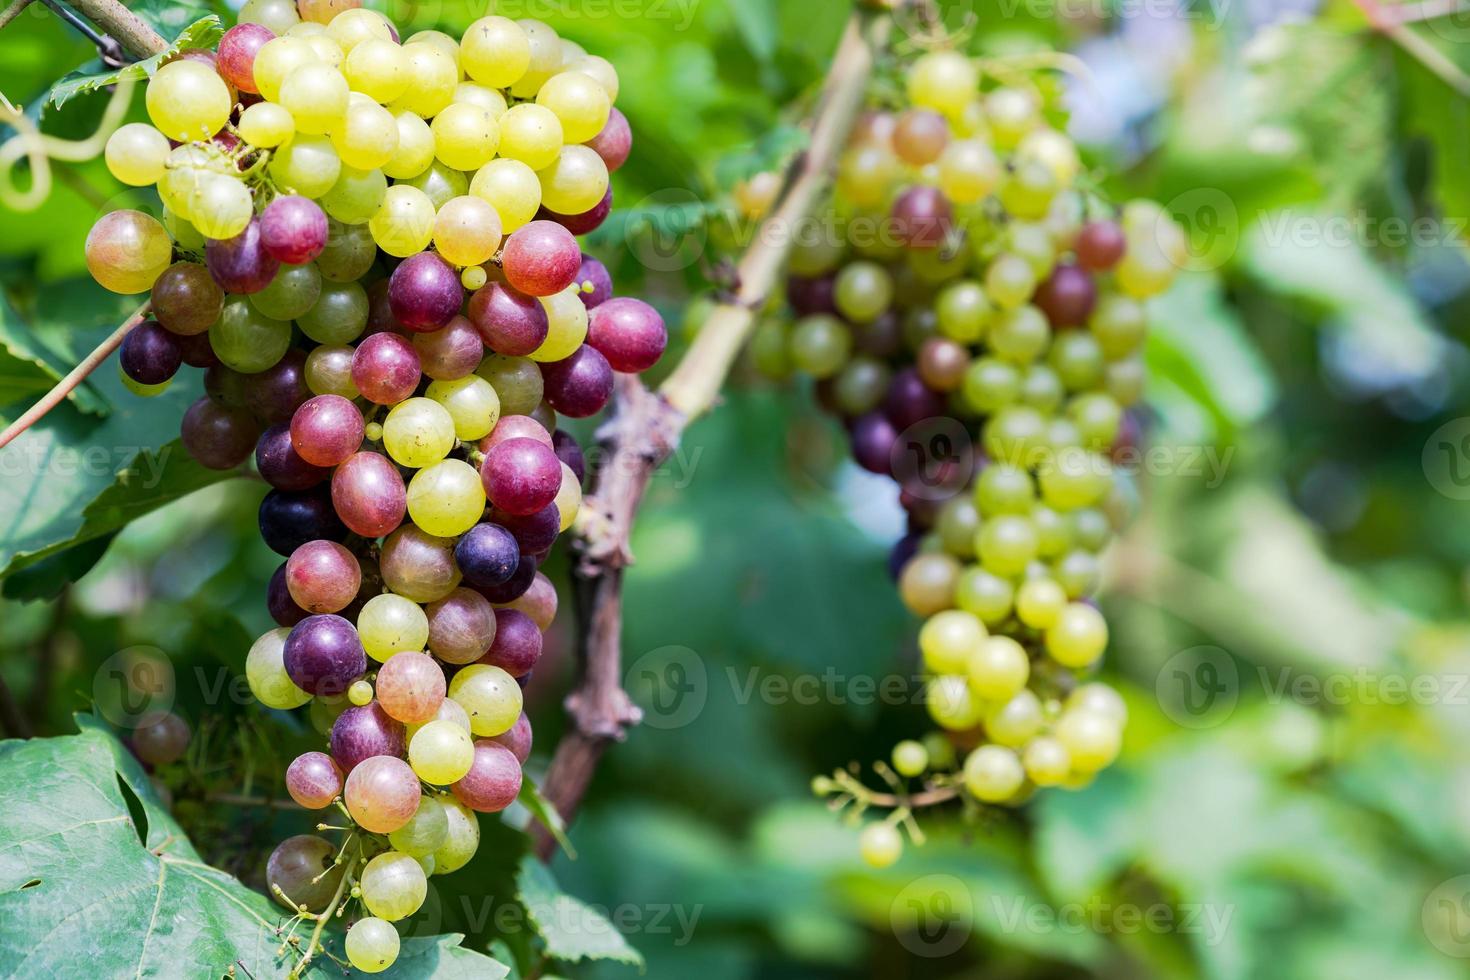 wijngaard met witte wijndruiven op het platteland, zonnige druiventrossen hangen aan de wijnstok foto